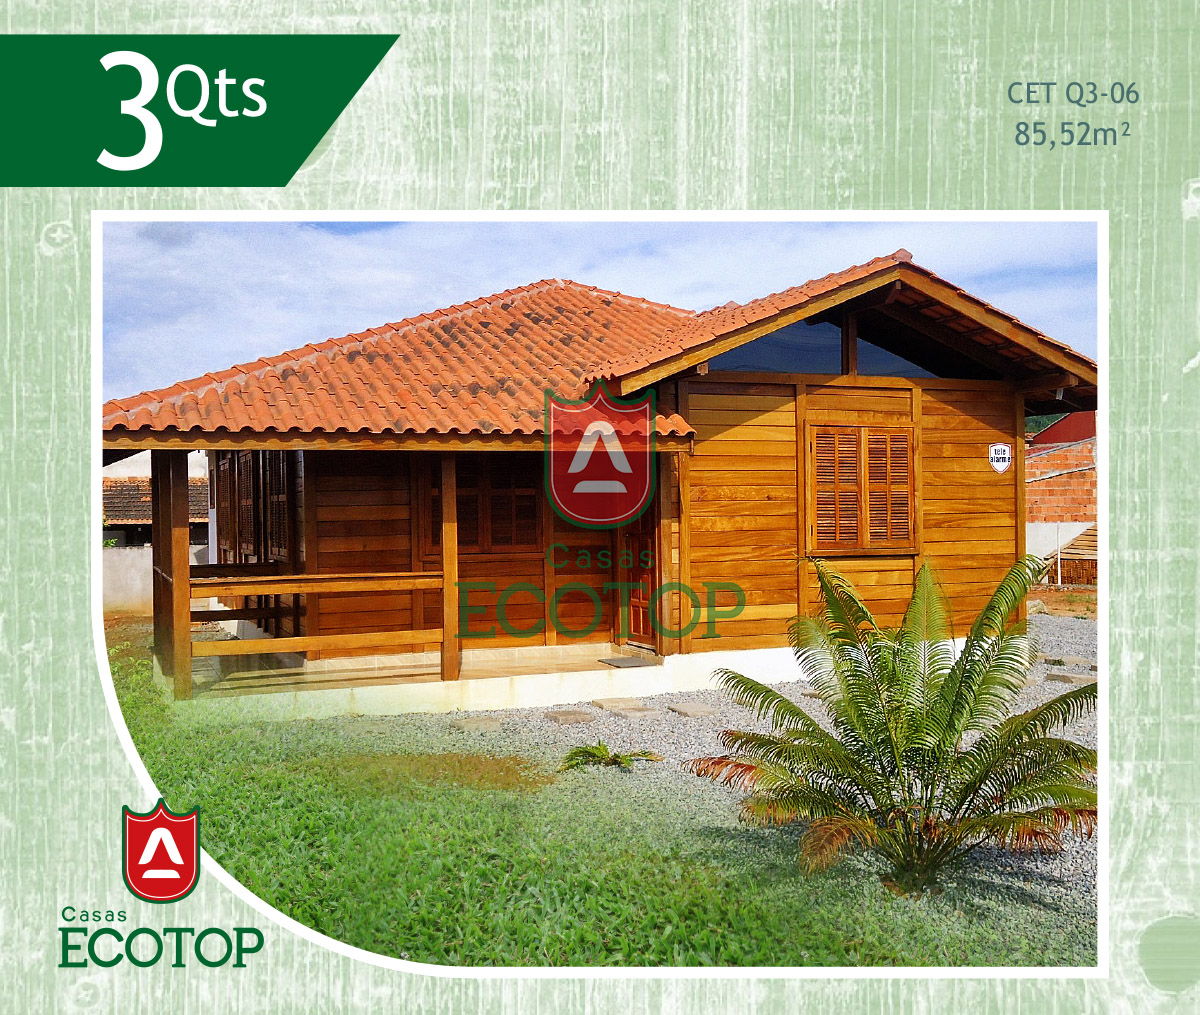 cet-06-fachada-casas-de-madeira-ecotop.cdr